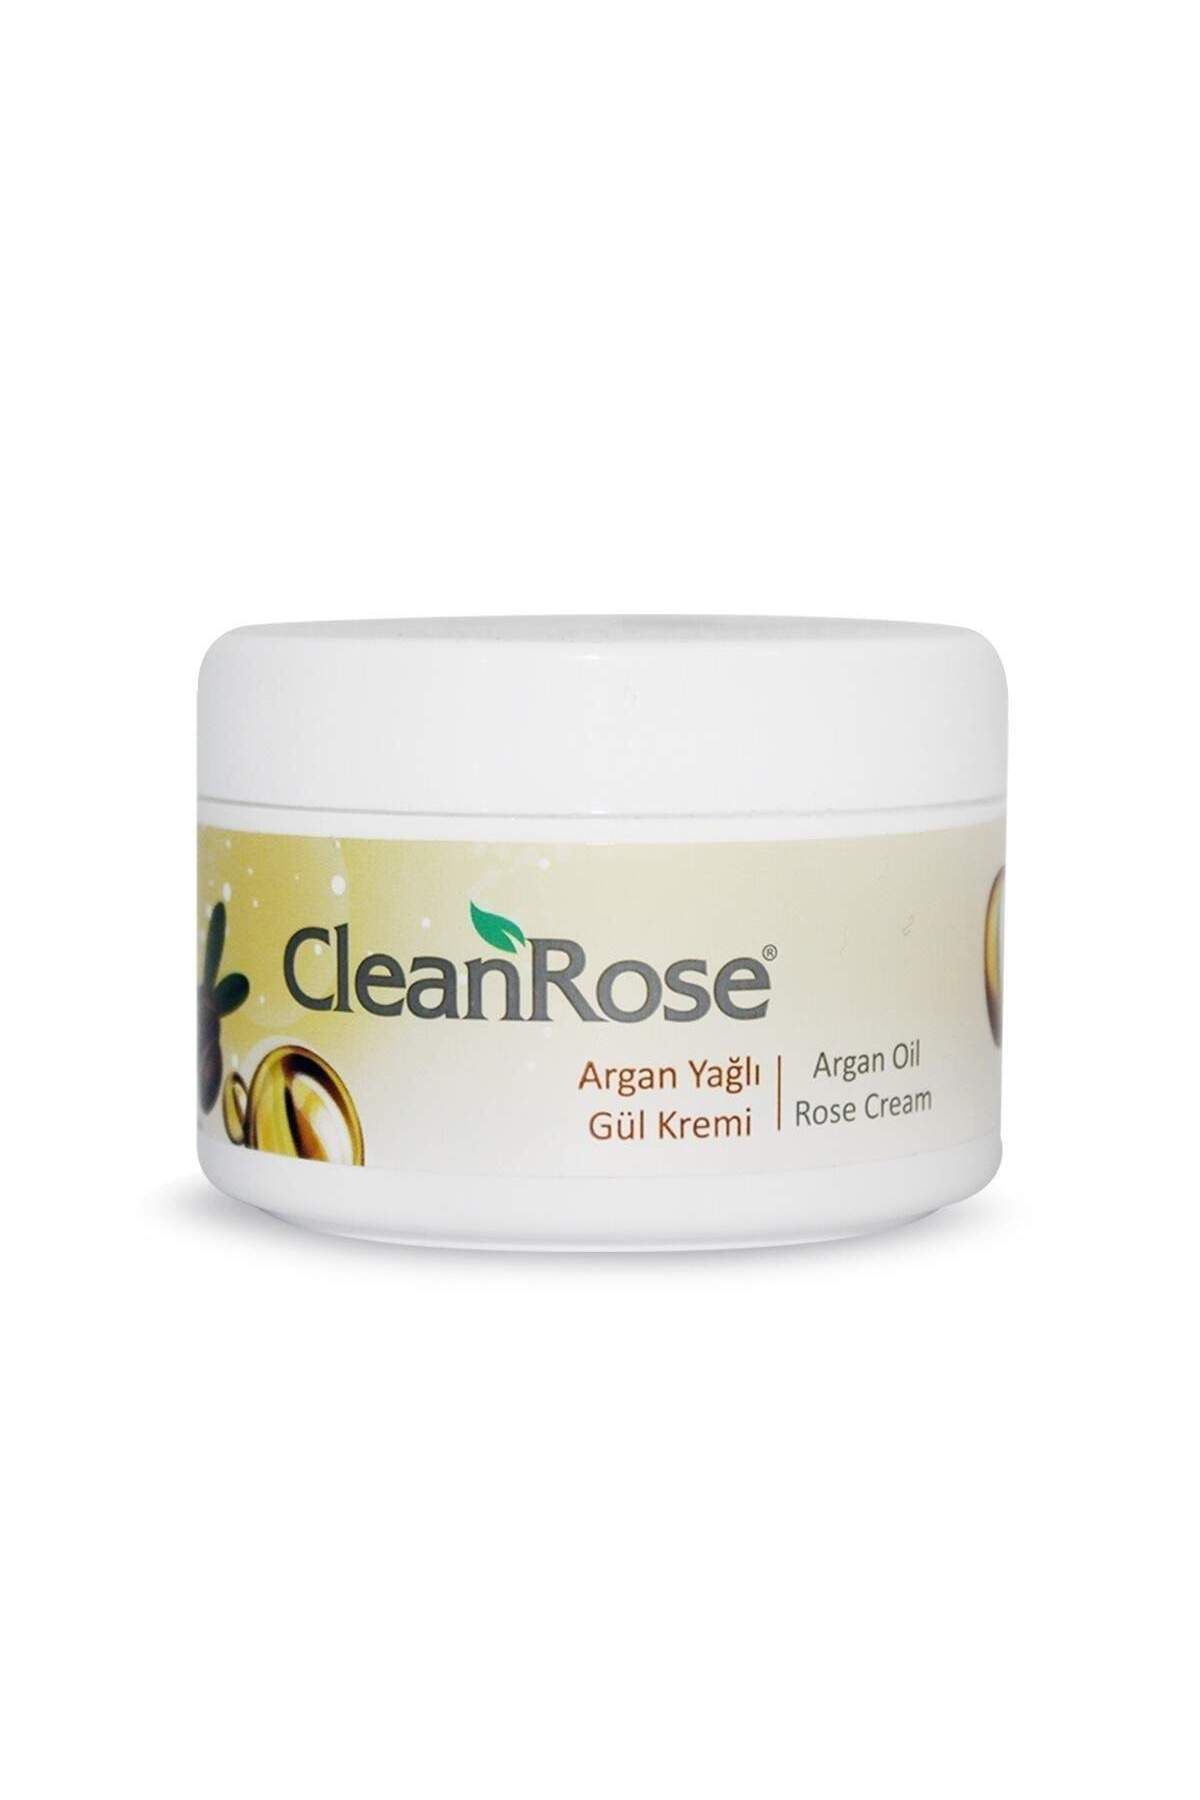 Clean Rose Argan Yağlı Gül Kremi